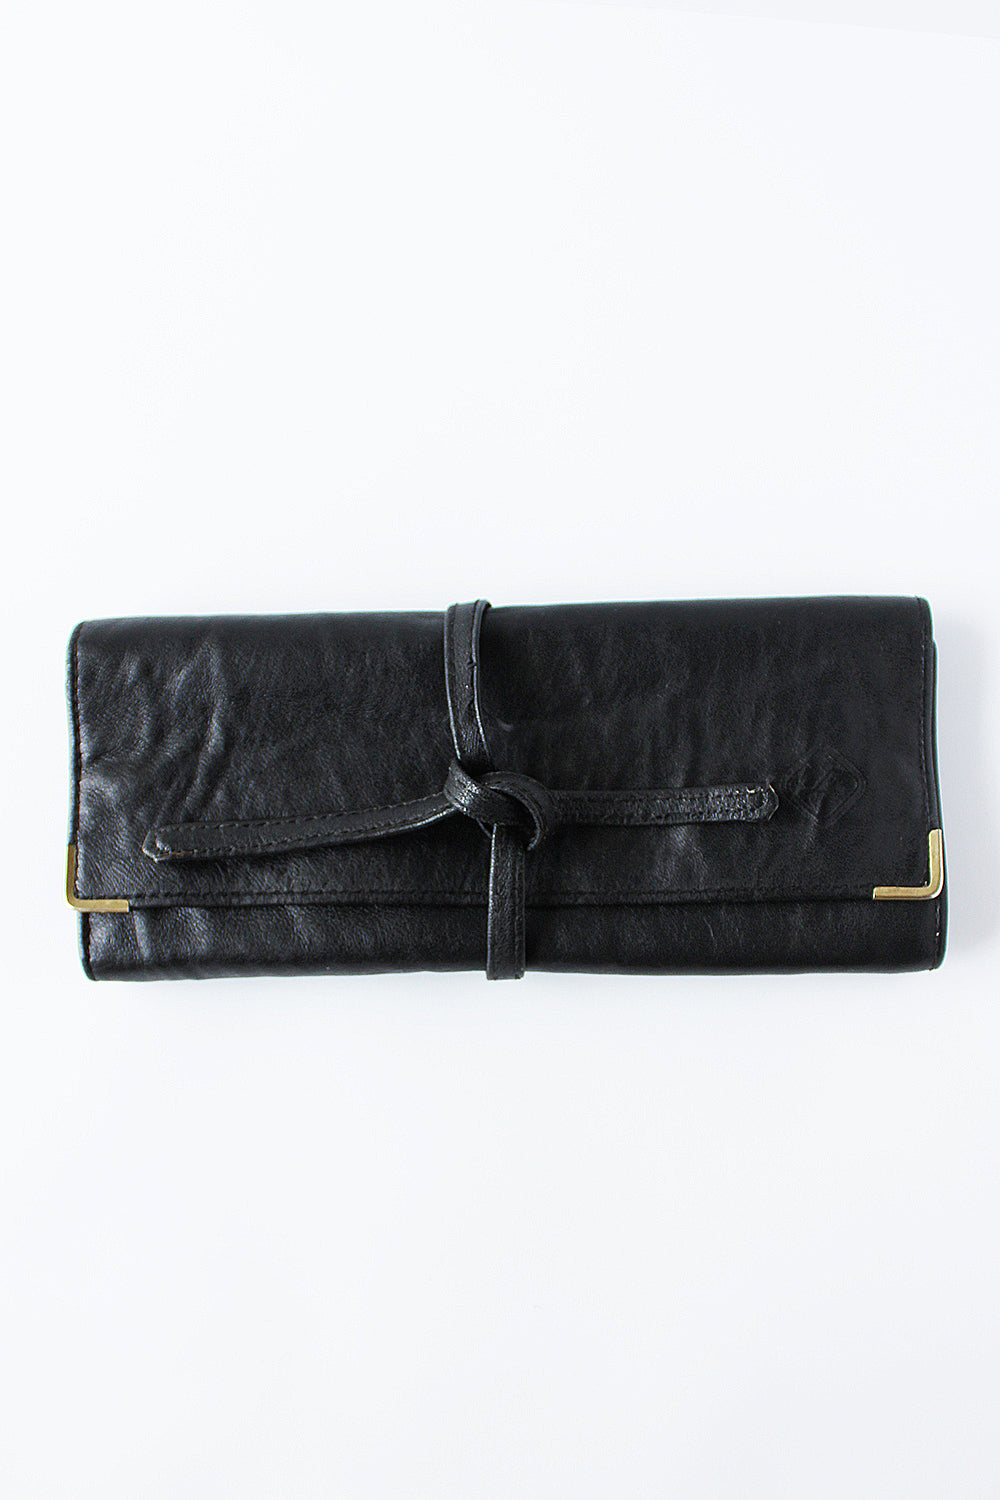 Vintage folded clutch wallet